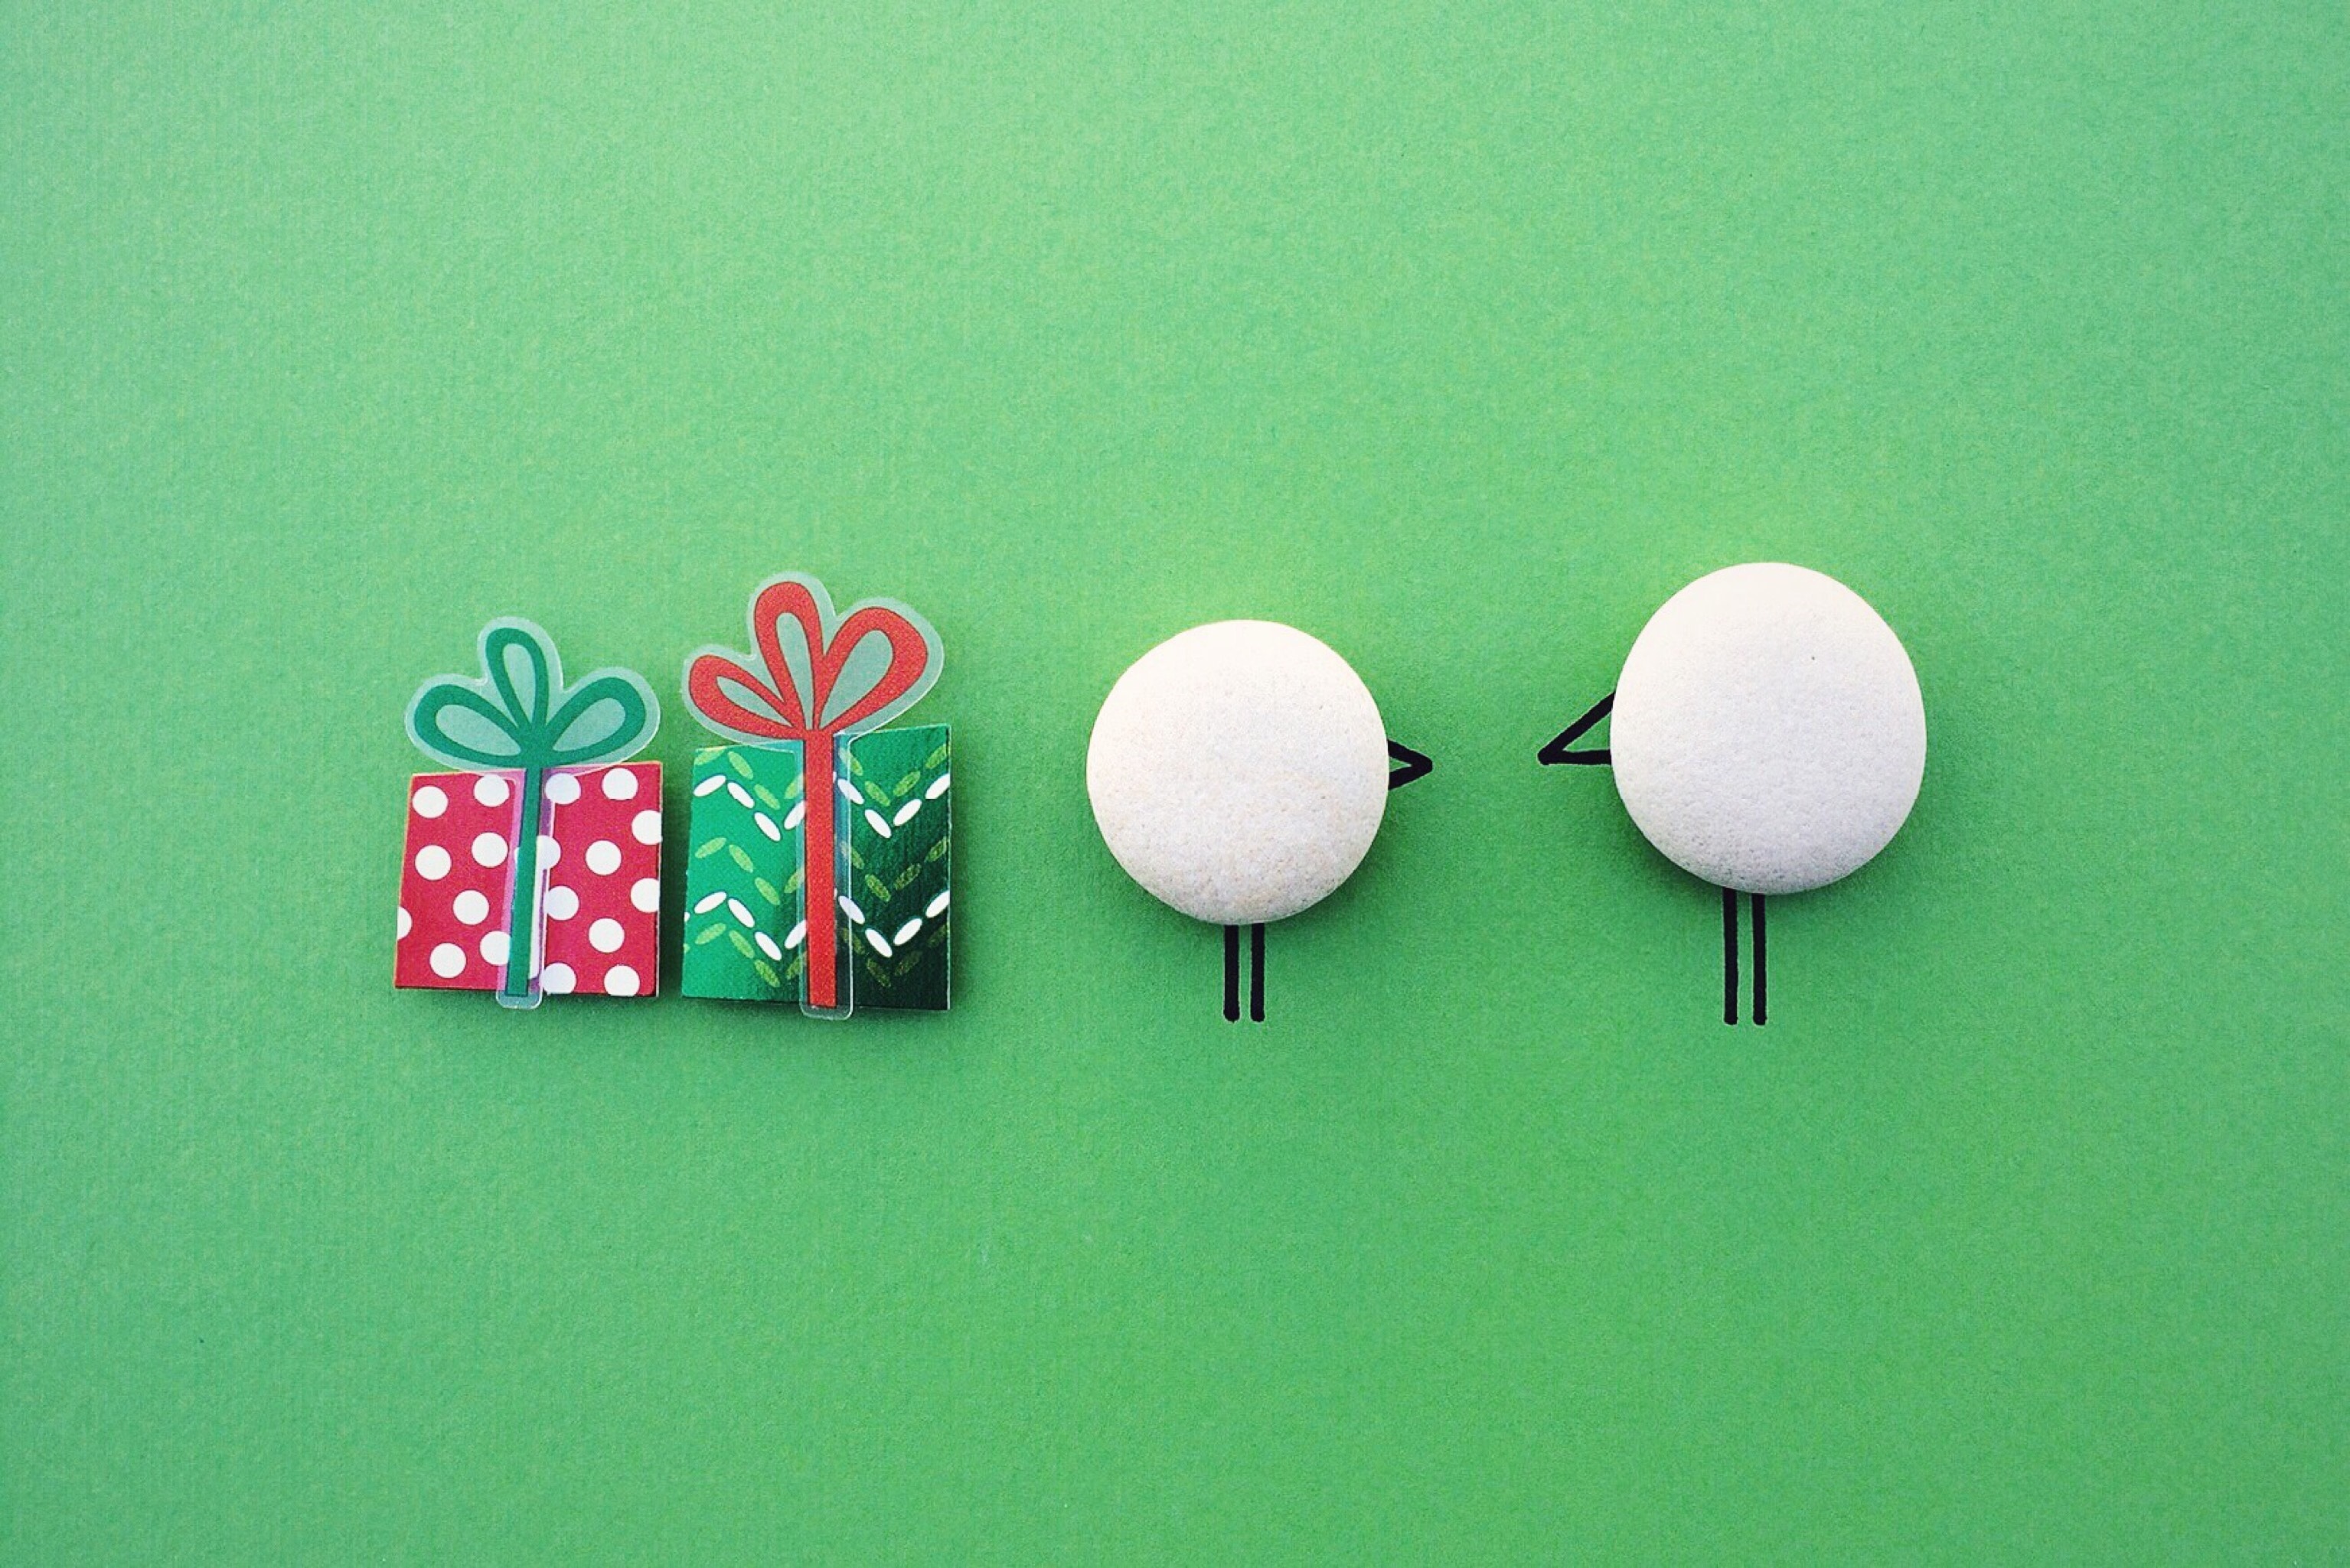 2 white round ornaments